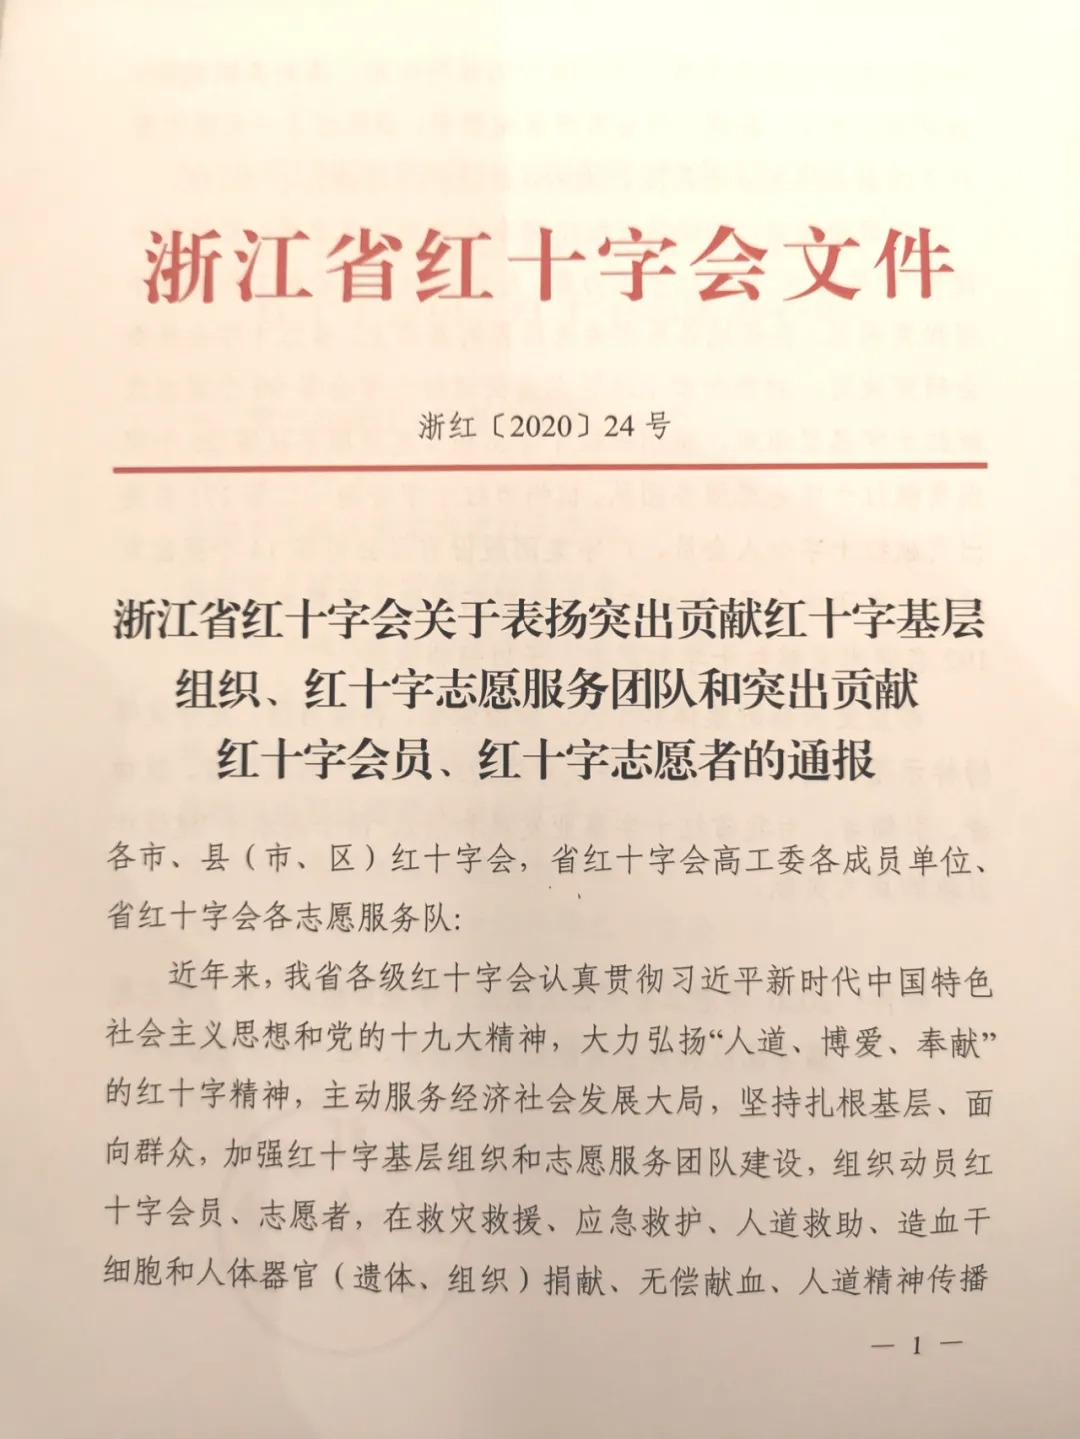 全省红十字系统志愿服务工作推进会在杭召开 新闻动态 第4张